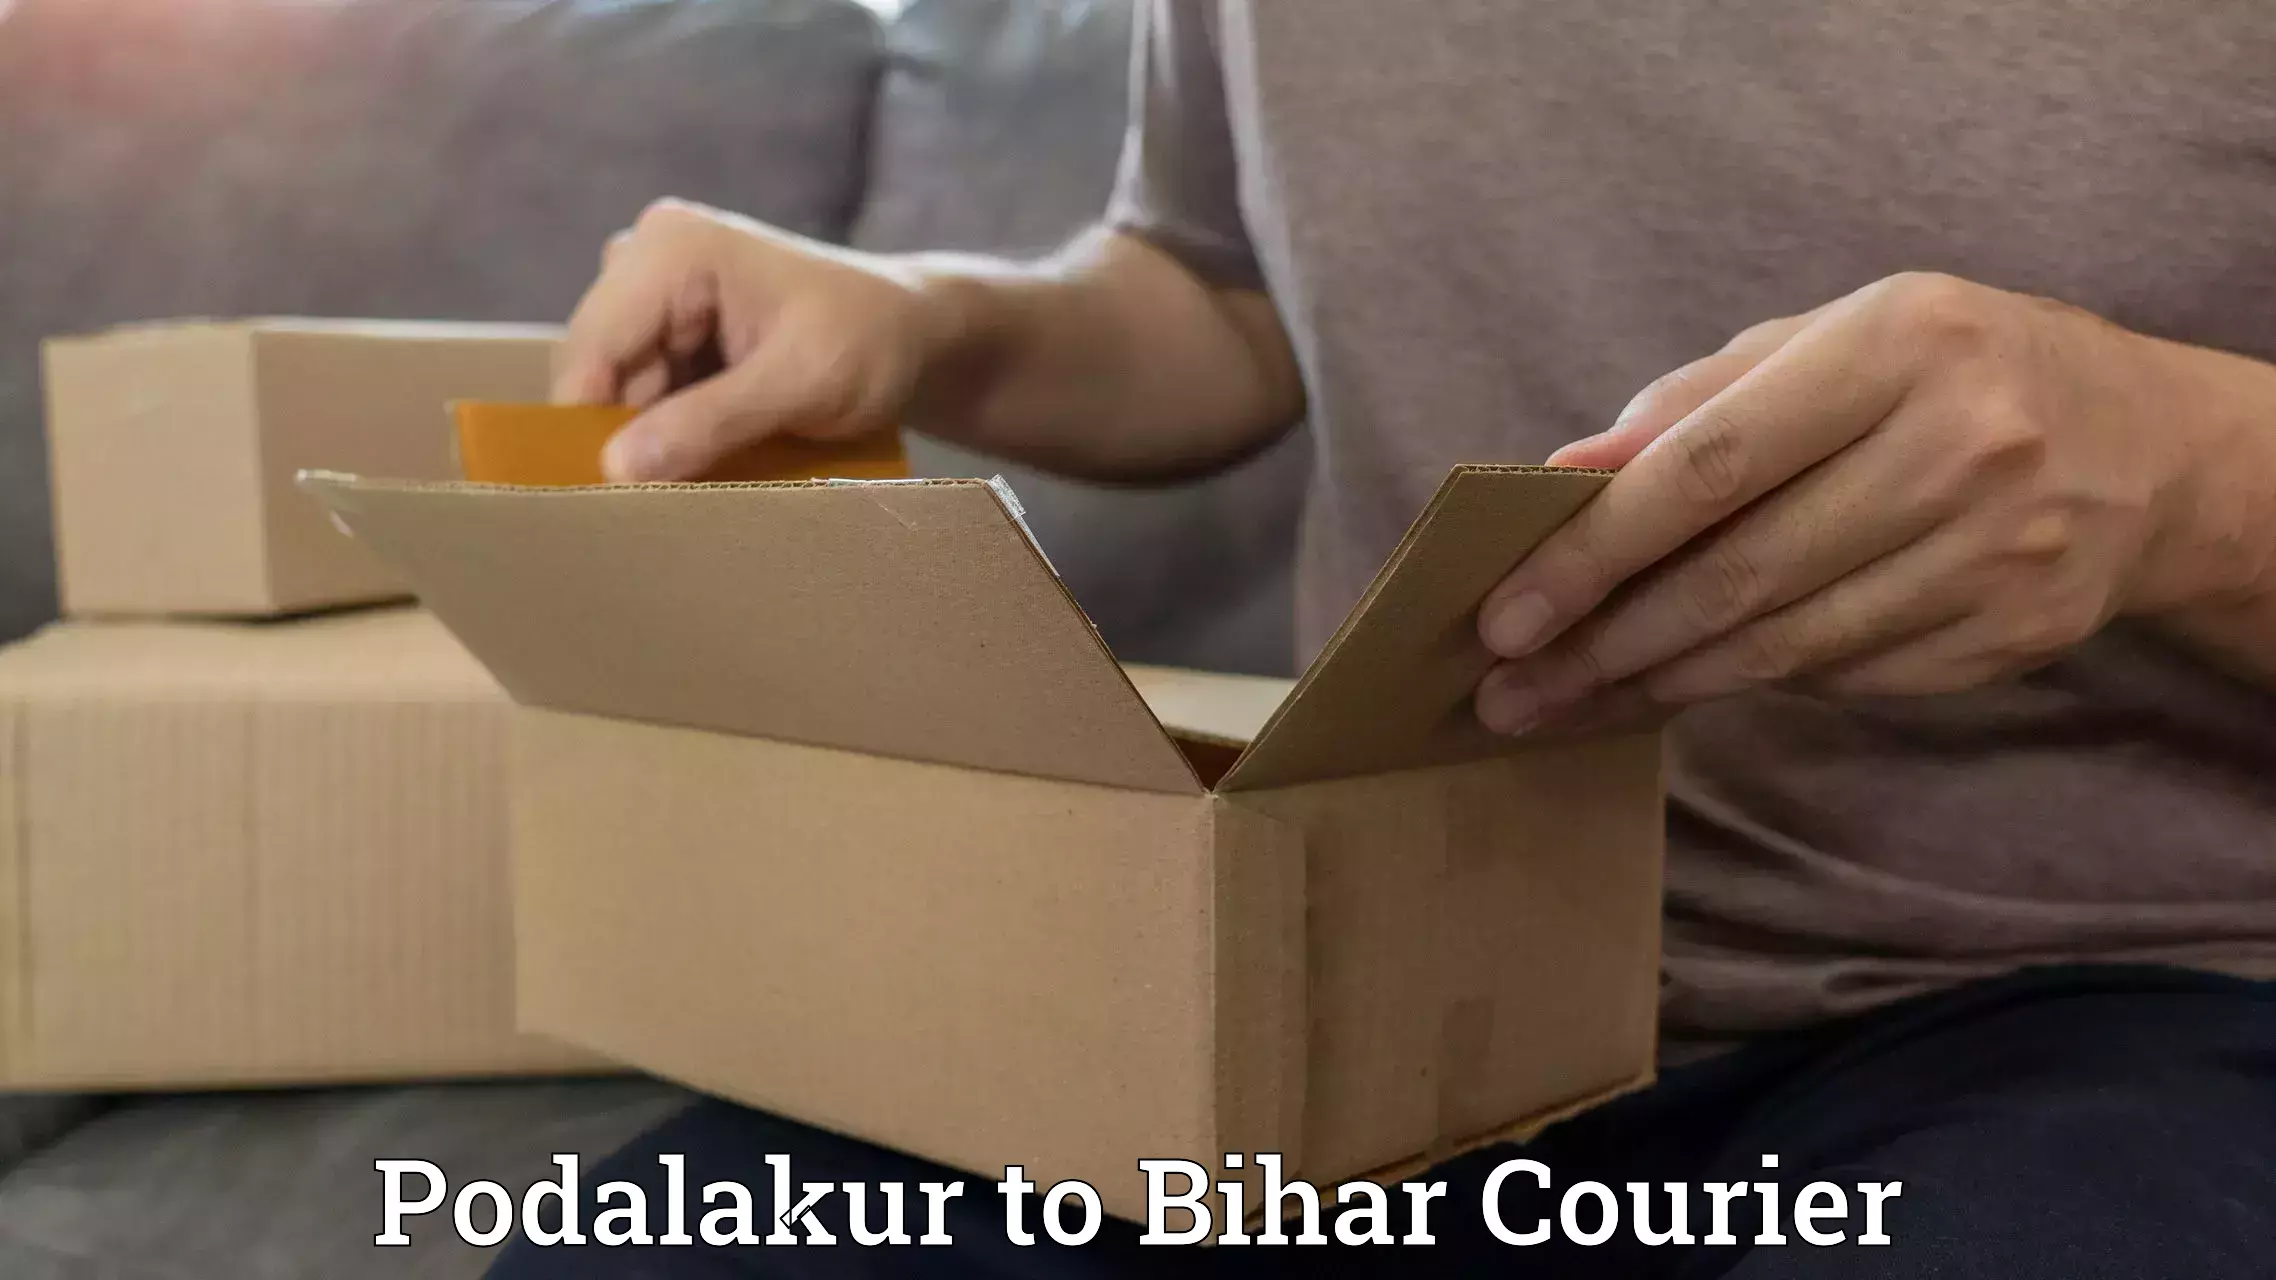 Courier app Podalakur to Saraiya